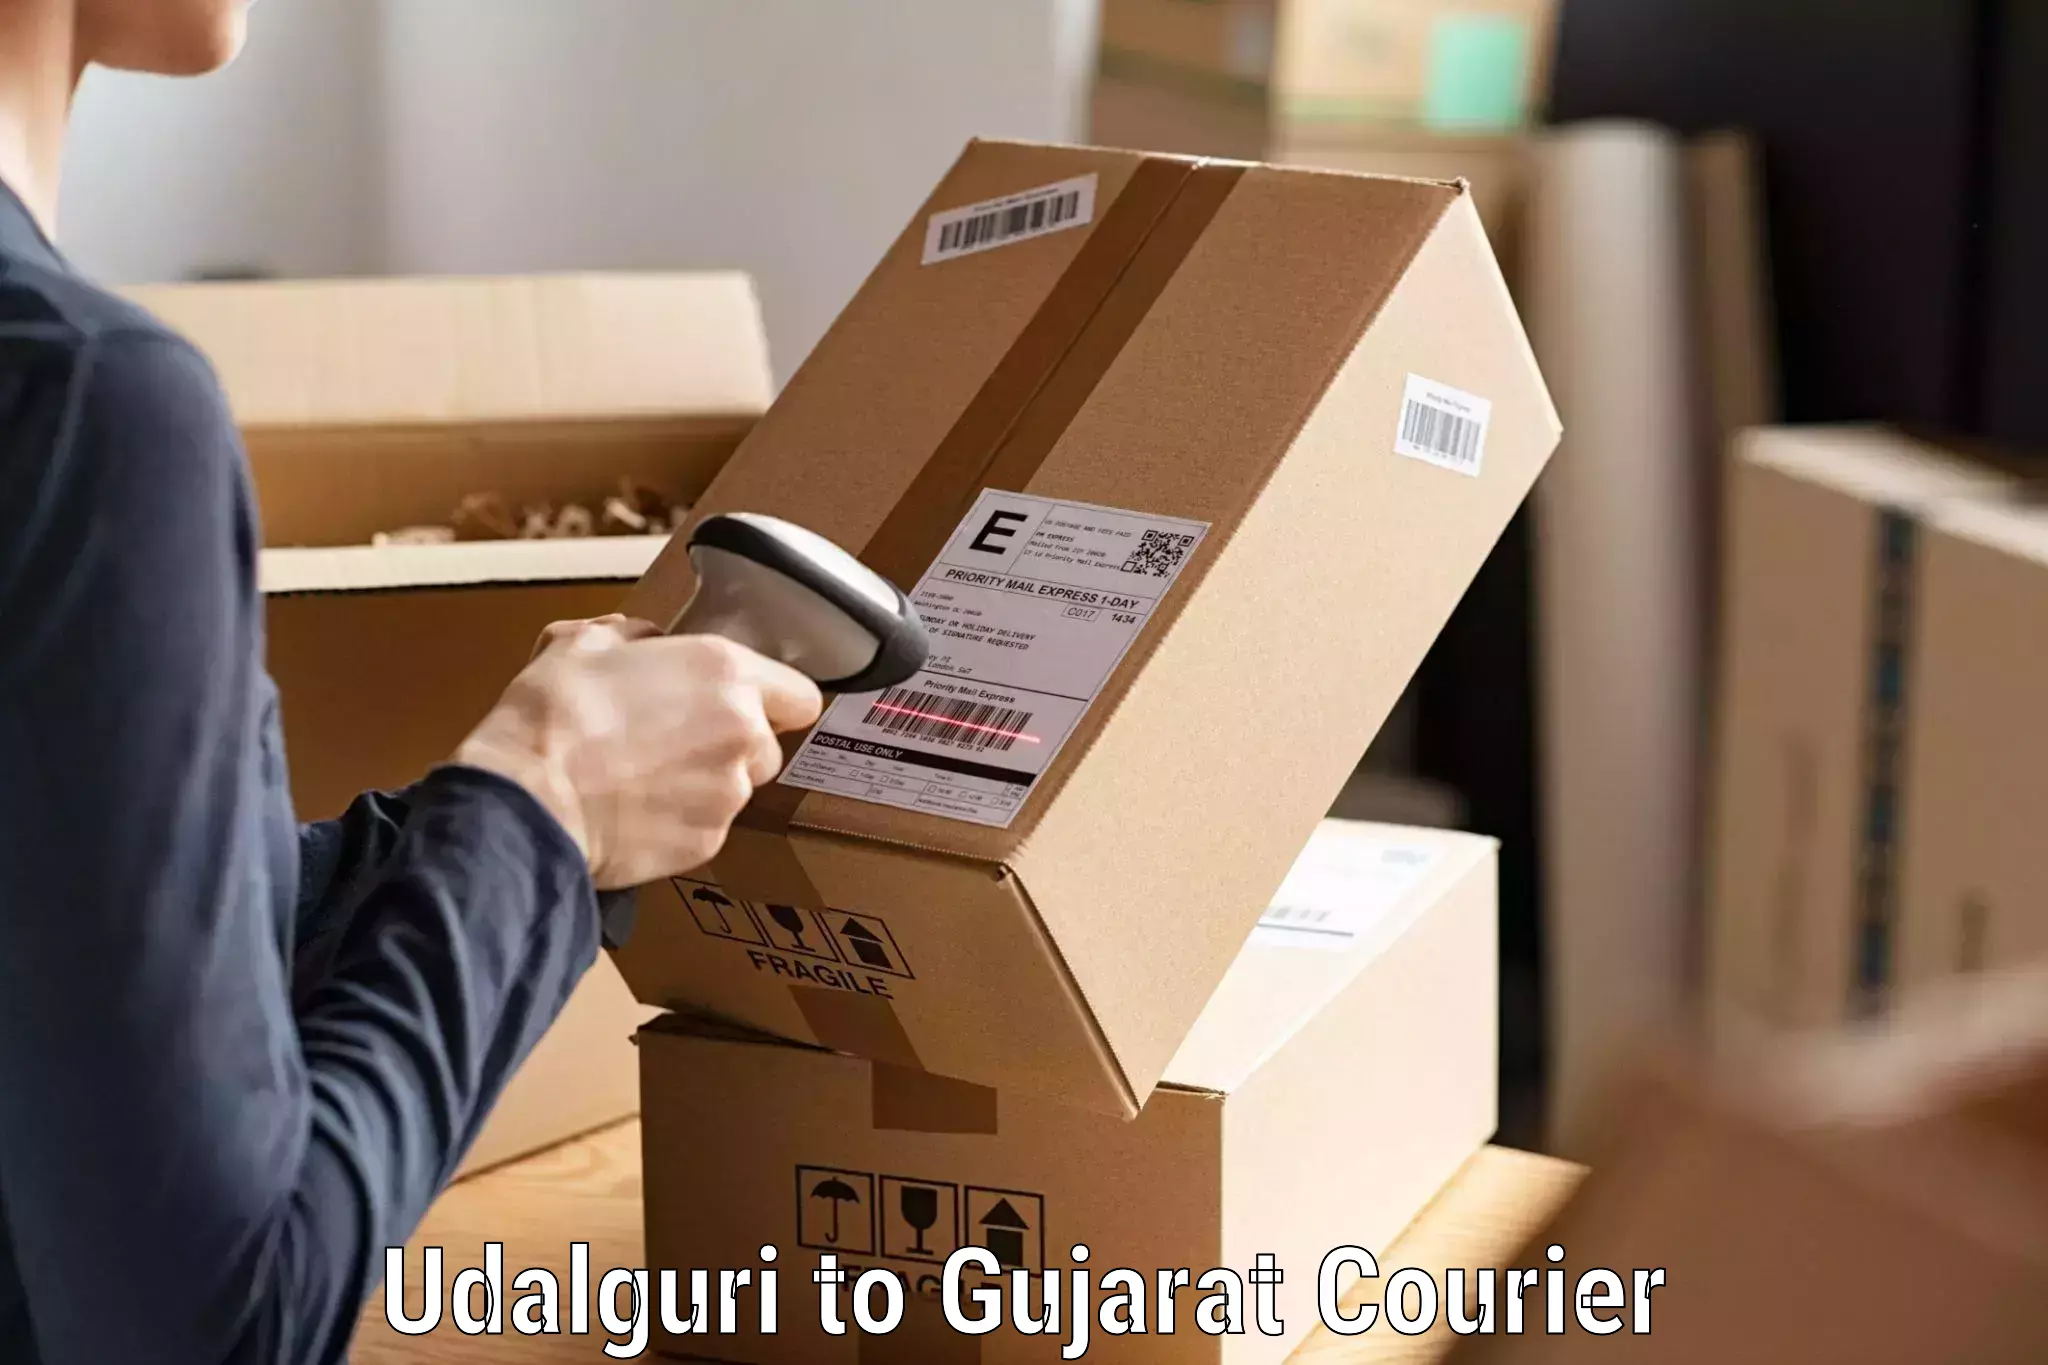 High-capacity parcel service Udalguri to Gujarat